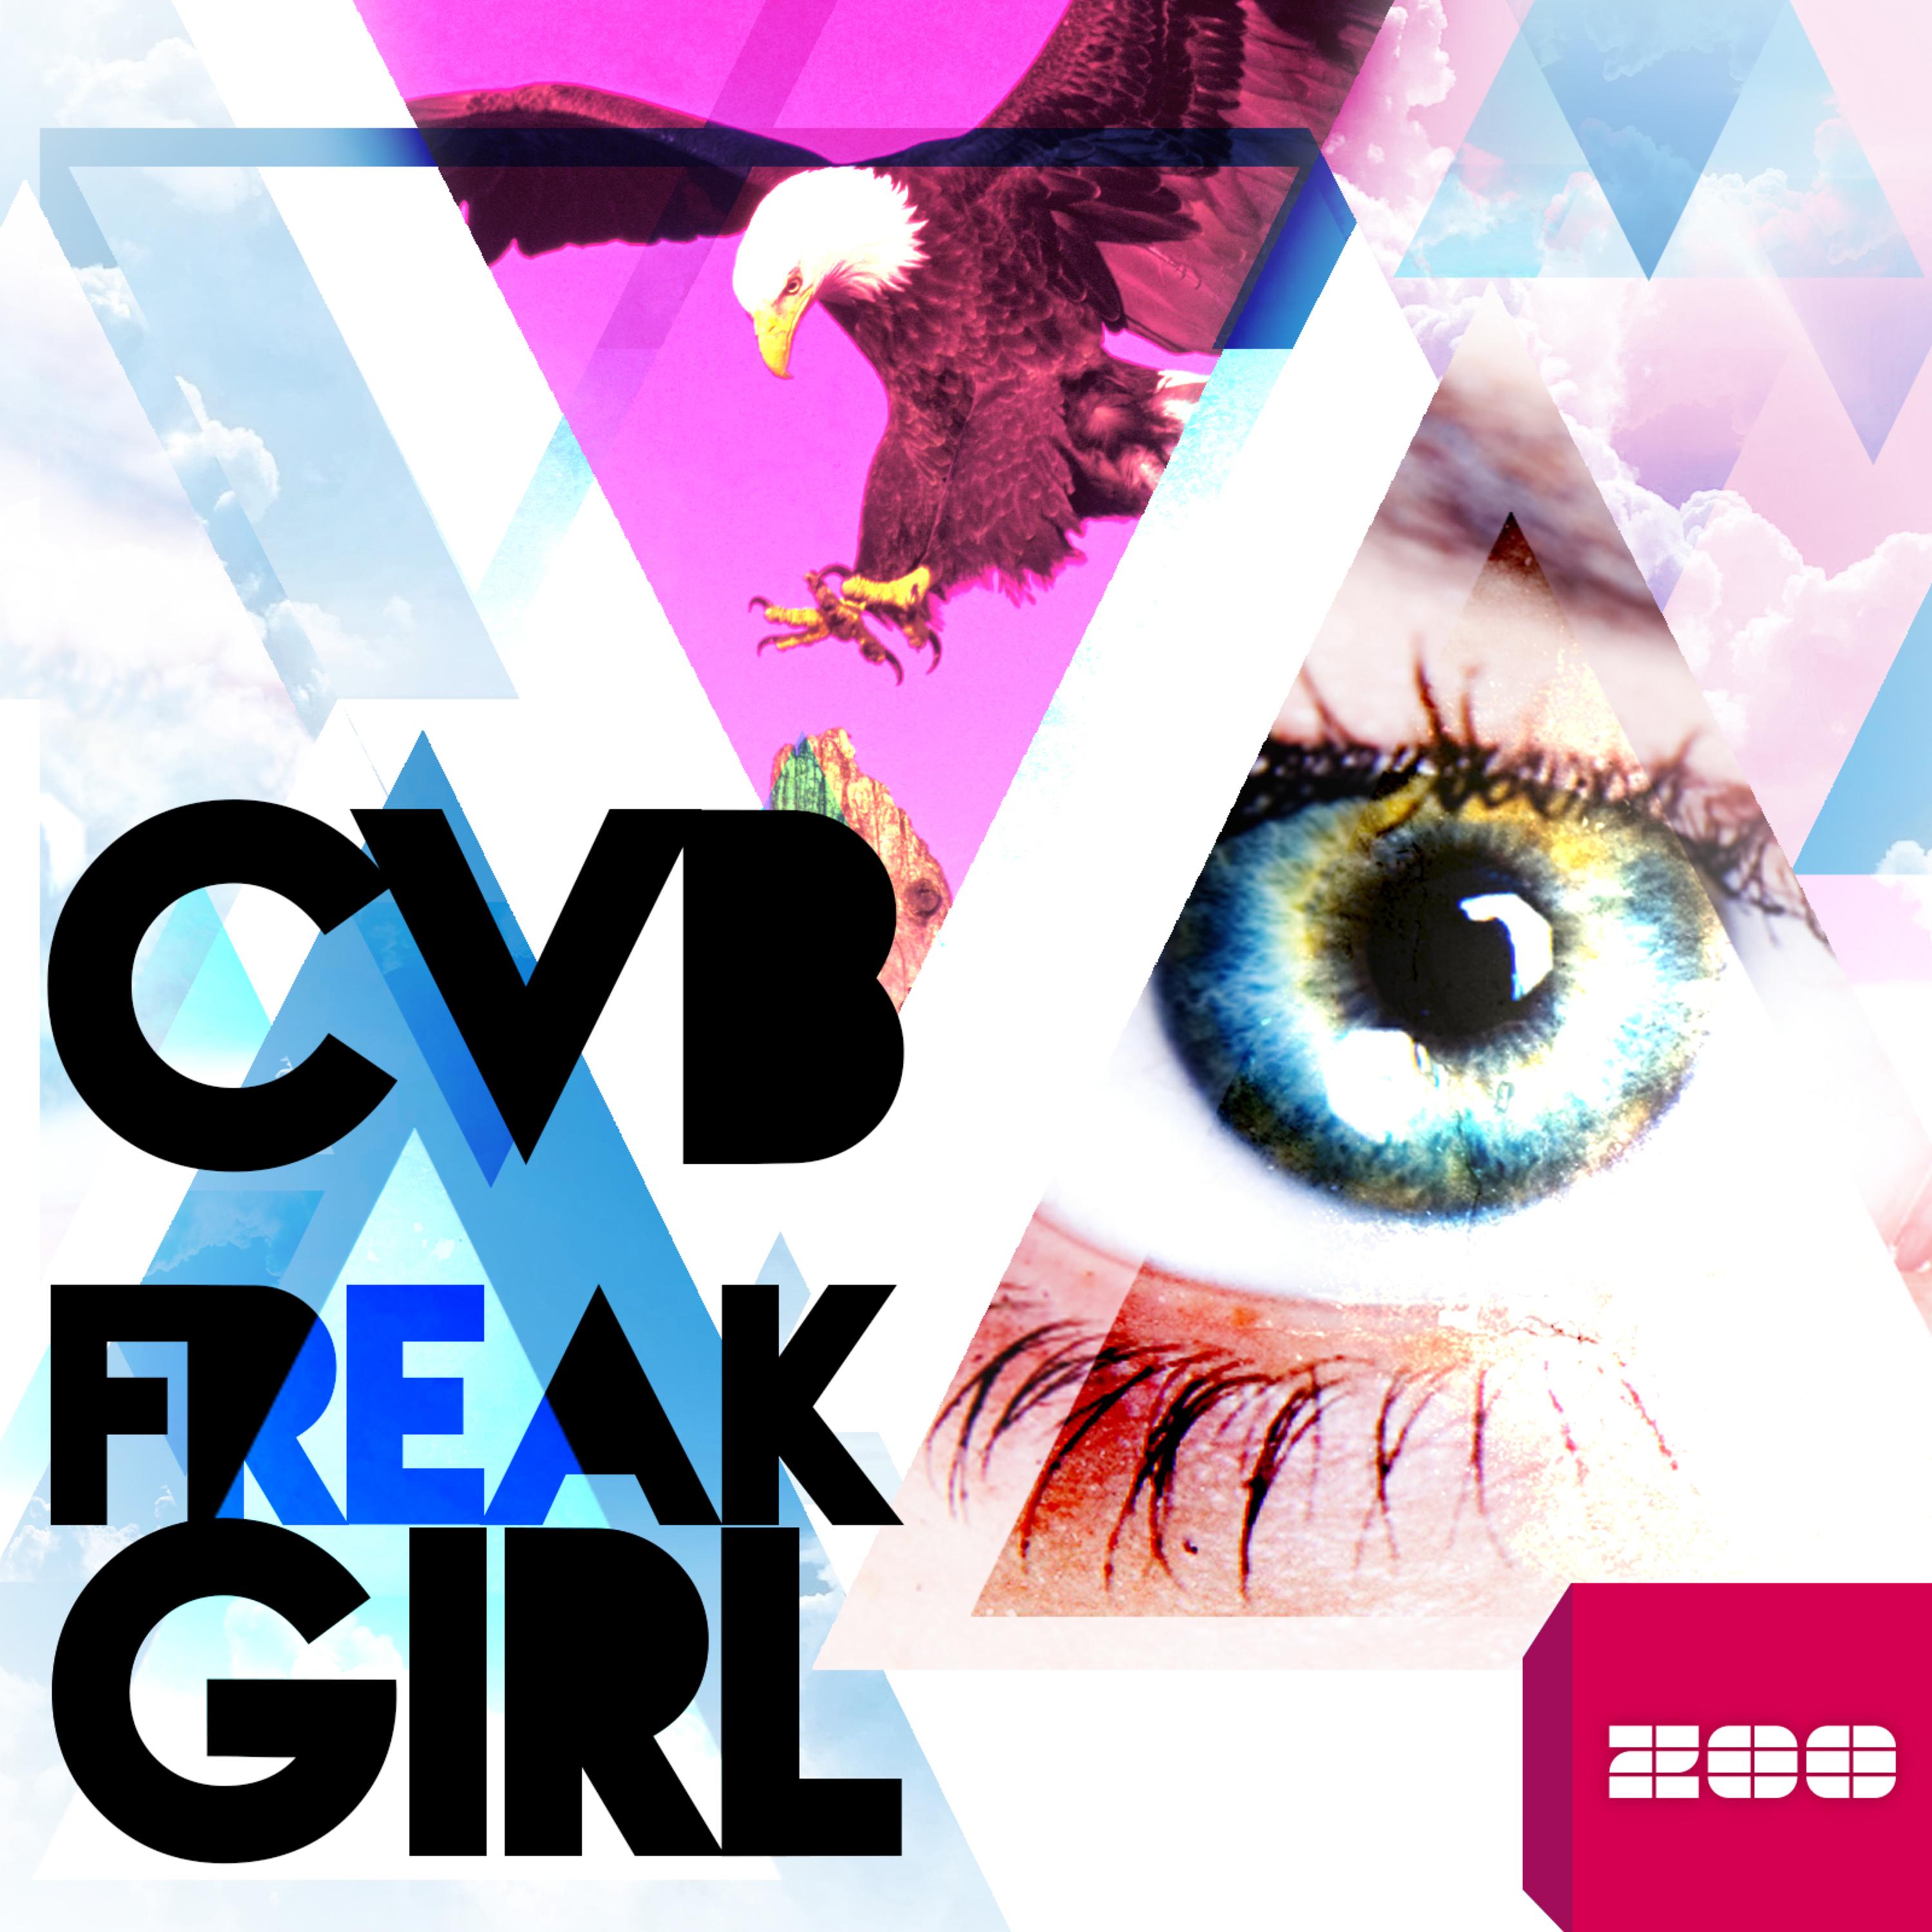 Freak Girl (Crew Cardinal Remix)